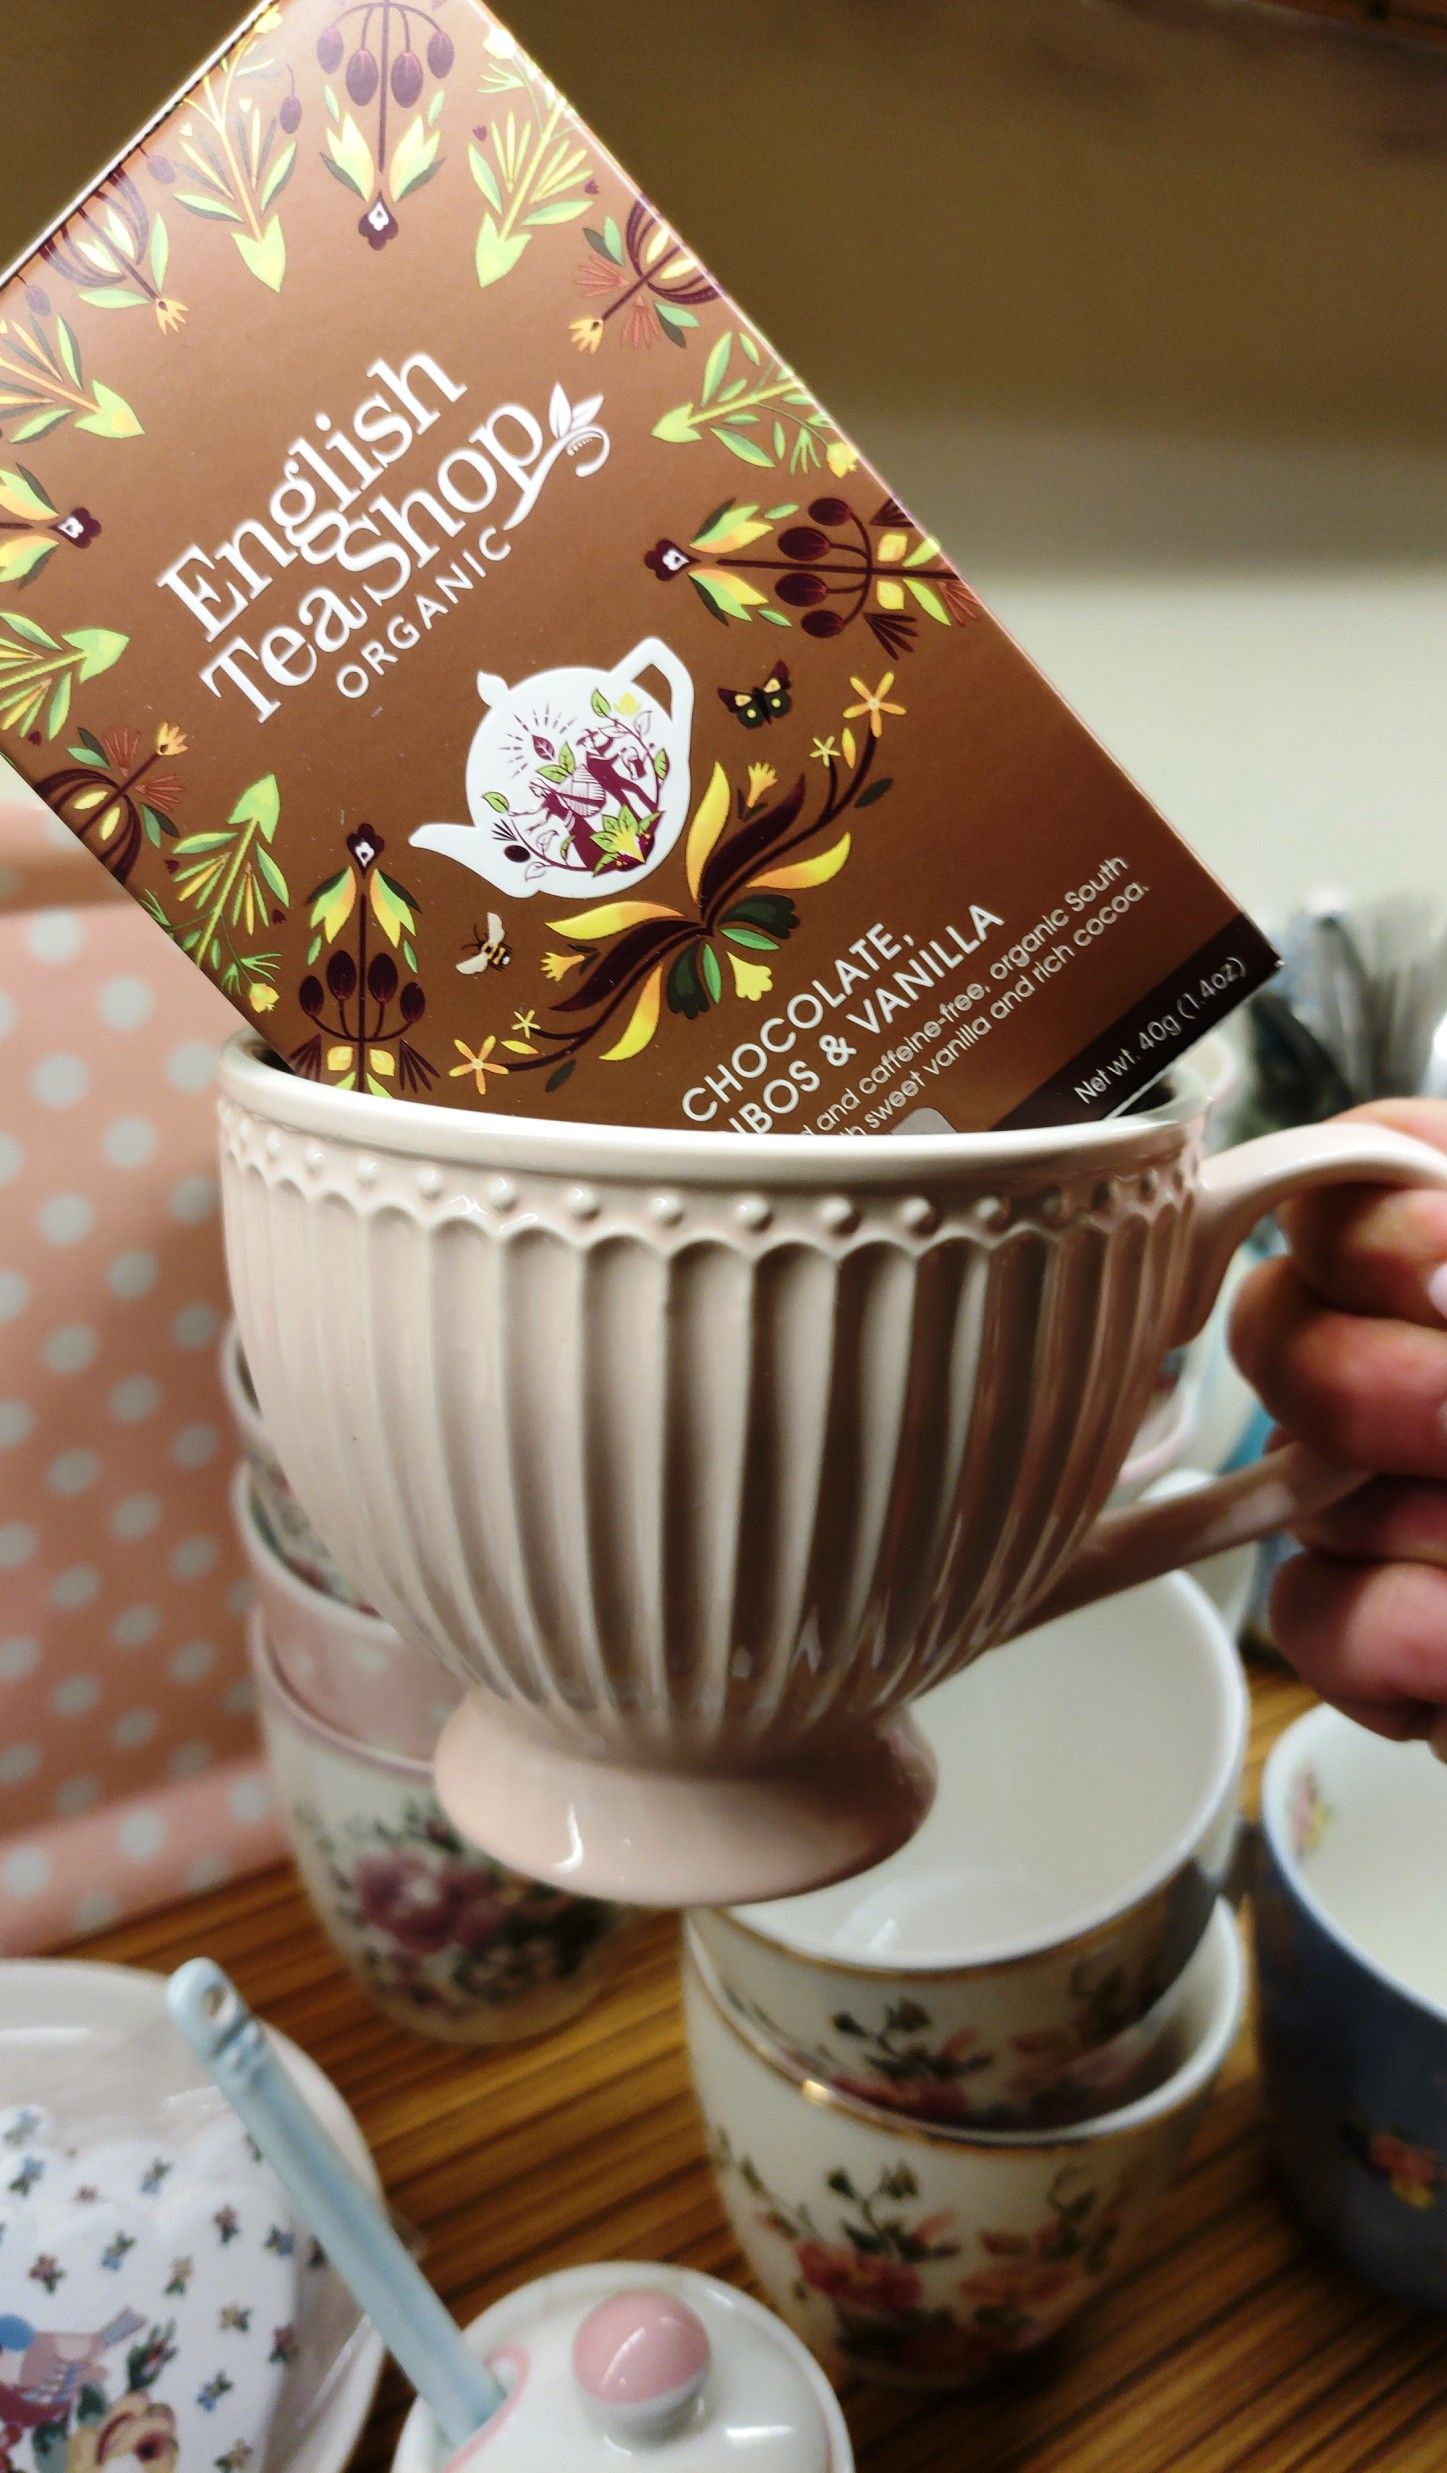 La infusió de Rooibos CHOCOLATE & VANILLA d' English TeaShop ve presentada en una capsa amb 20 unitats tancades individualment. El sabor del cacau, de la xocolata i vainilla li donen un toc dolç. Aquesta infusió està elaborada amb ingredients naturals i ecològics i NO conté cafeïna. És ideal per prendre “en calent” o “en fred”. A INHALA Cafès i Tes som punt de venda de English Tea Shop, tenim més de 15 varietats per triar, quina serà la teva? Però si vols conèixer la nostra selecció de Rooibos “a granel” no dubtis a venir i poder-los tastar en persona, el seu perfum t’ encantarà, espècies, flors, fruites, ingredients 100% naturals molt rics en sabor. A INHALA t’ oferim la millor selecció de cafès, tes, infusions, galetes, xocolates i molts complements per la taula i cuina. Estem  a Portalet, 9 de Granollers, Barcelona. T’esperem! La infusión de Rooibos con Chocolate y Vainilla de English TeaShop es muy agradable por su sabor dulzón. Es ideal para tomar «en caliente» o «en frío», en verano bien fresquita, te encantará. En INHALA Cafés y Tés somos punto de venta de English TeaShop, tenemos más de 15 variedades para que puedas elegir ¿cuál será la tuya? Te invitamos a que conozcas nuestra selección de Rooibos “a granel”, no dudes en venir a vernos y así poder probarlos. Estamos seguras de que te encantará poder sentir los aromas de especias, frutas, flores, ingredientes 100% naturales muy ricos en sabor. Te esperamos en Portalet, 9 de Granollers, Barcelona con la mejor selección de cafés, tés, infusiones, galletas, chocolates y muchos complementos para la mesa y cocina. Somos INHALA, boutique especializada en Tés, Cafés, Infusiones y chocolates.